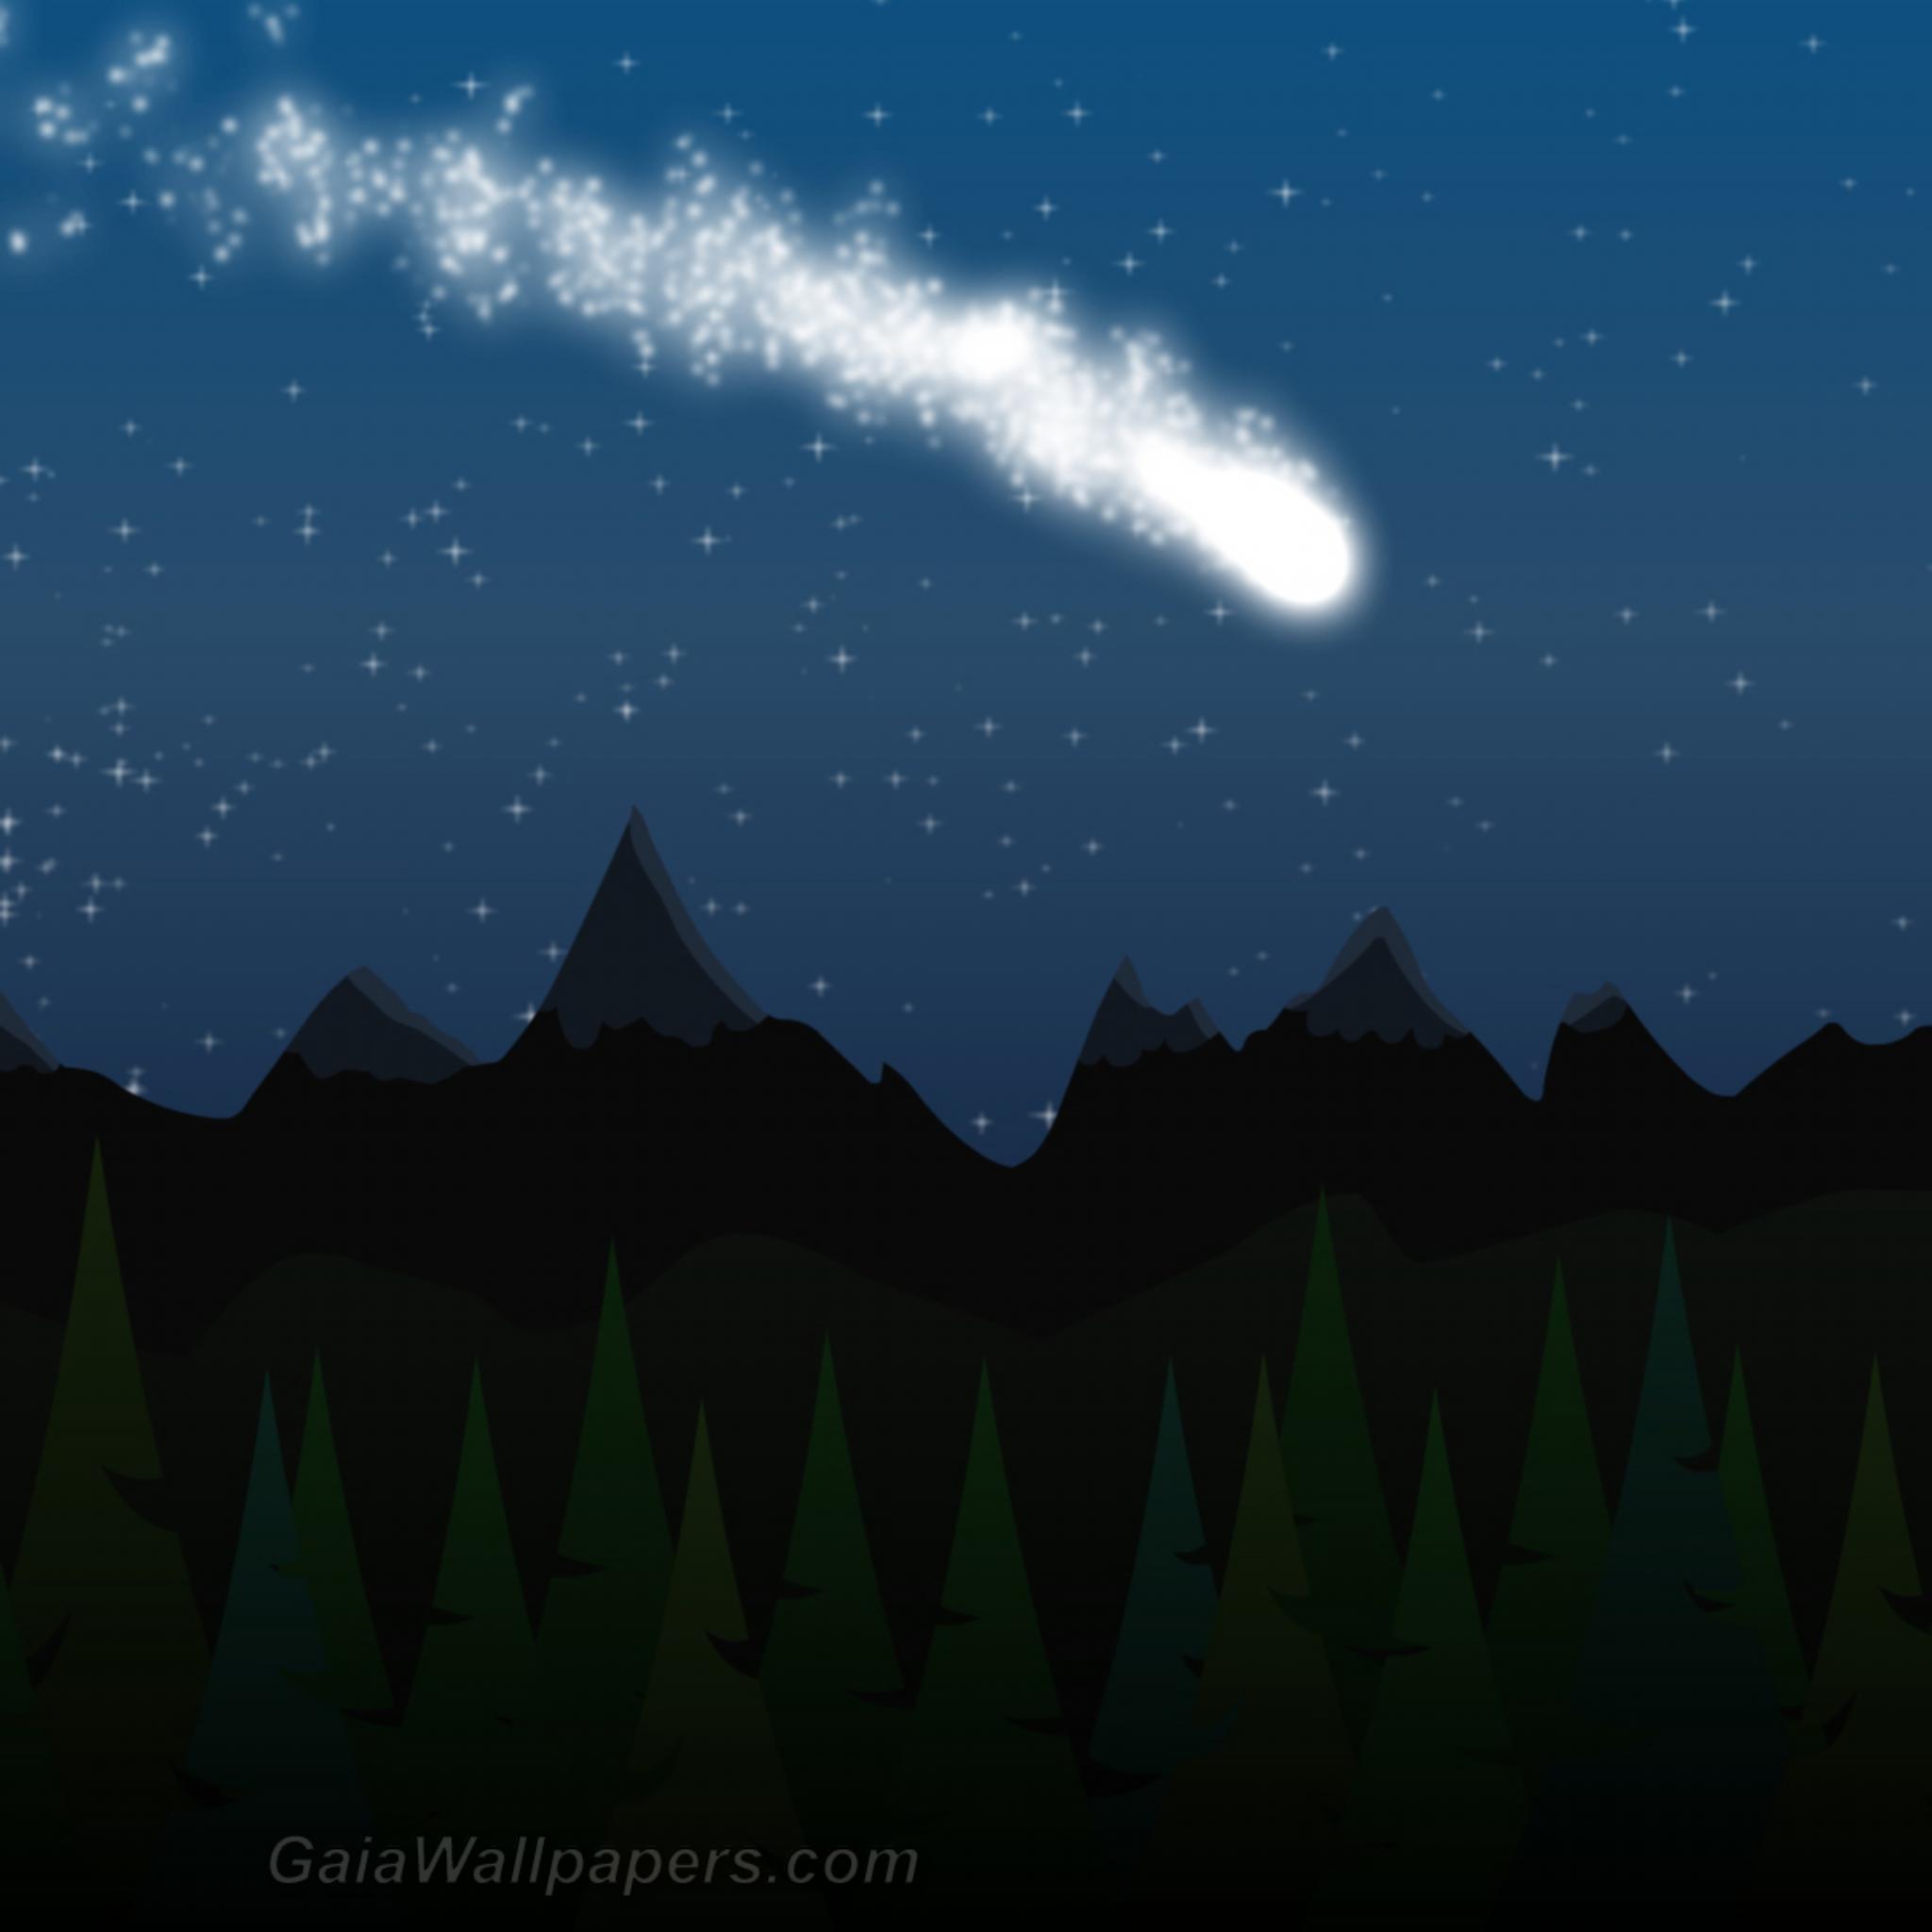 Comète dans le ciel étoilé - Fonds d'écran gratuits